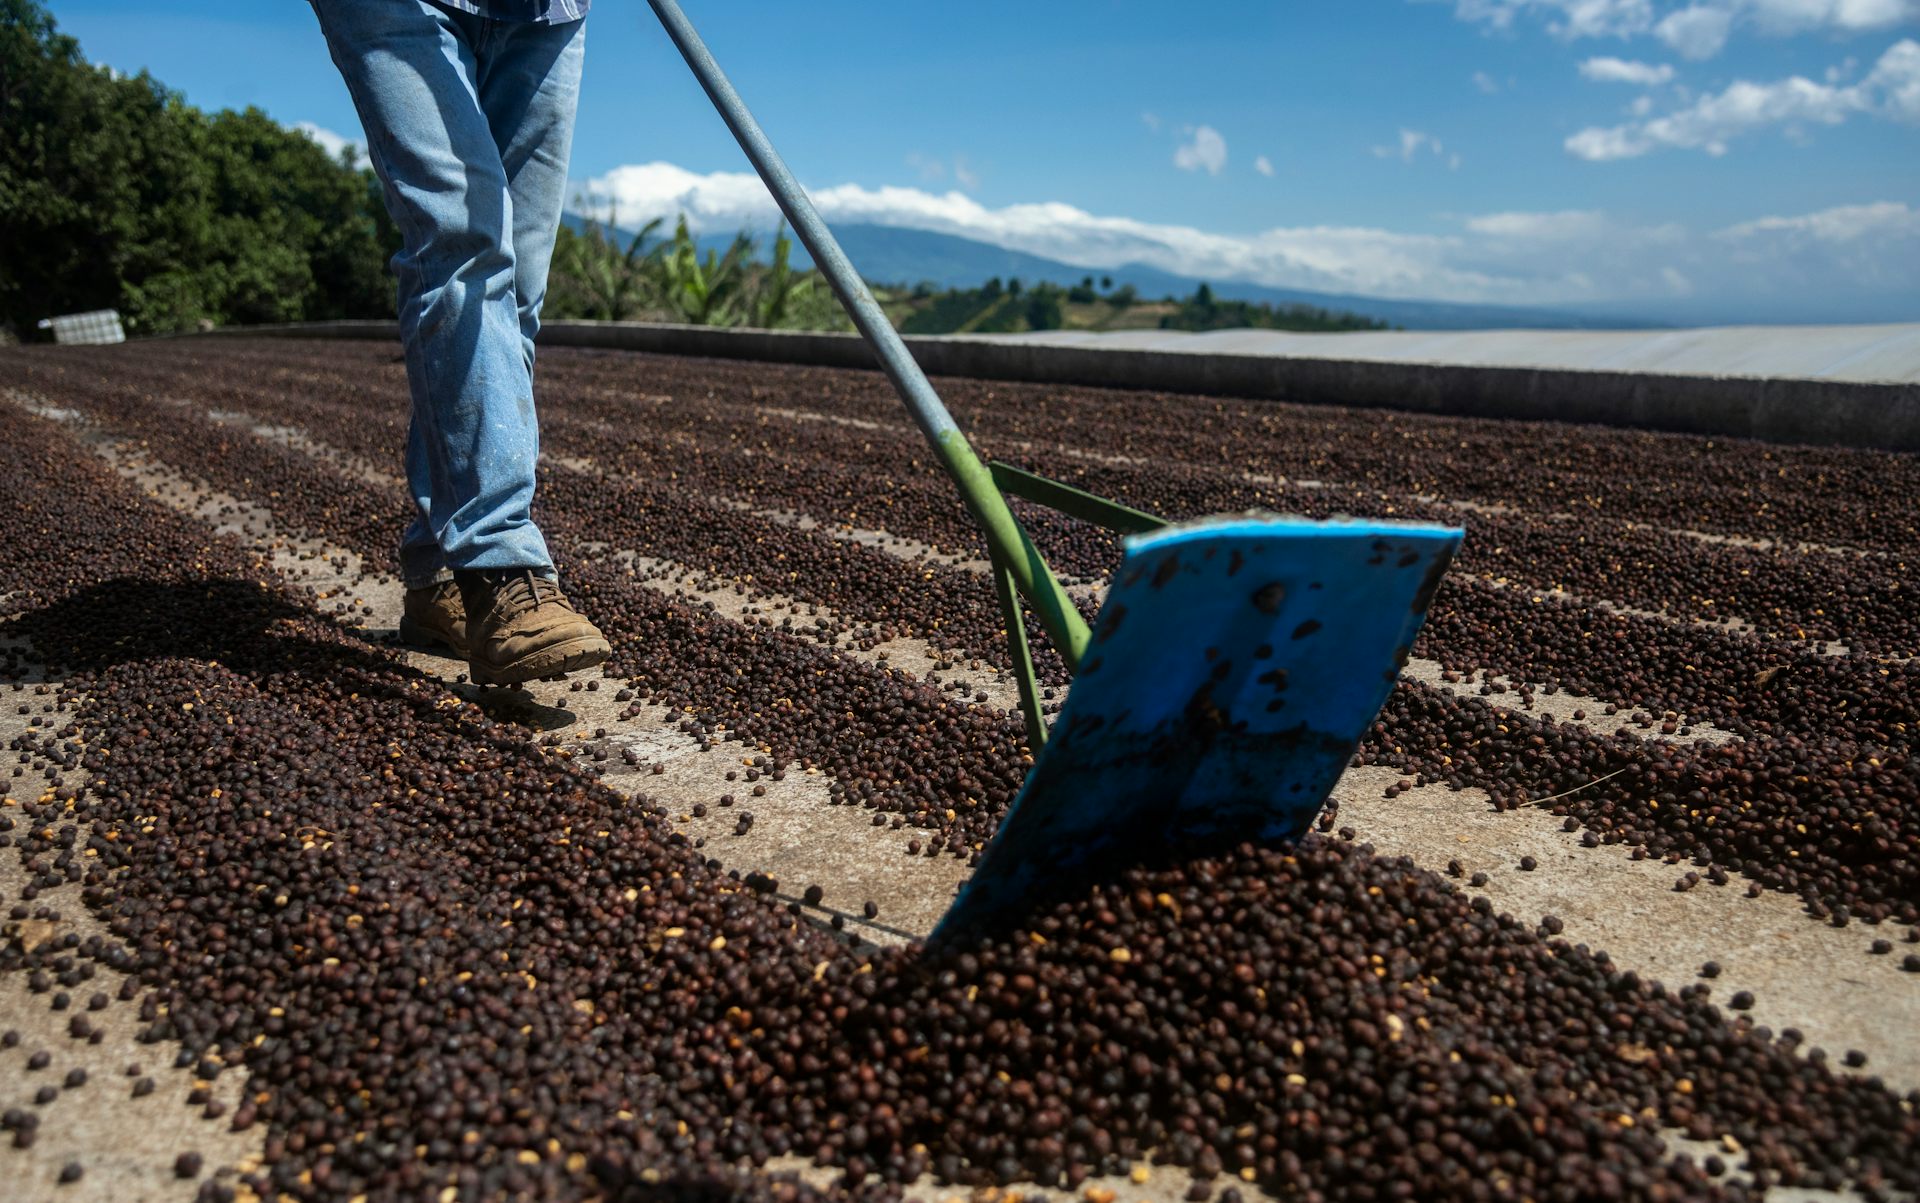 Мужчина перебирает кофейные зерна и сушит их на ферме в Коста-Рике.